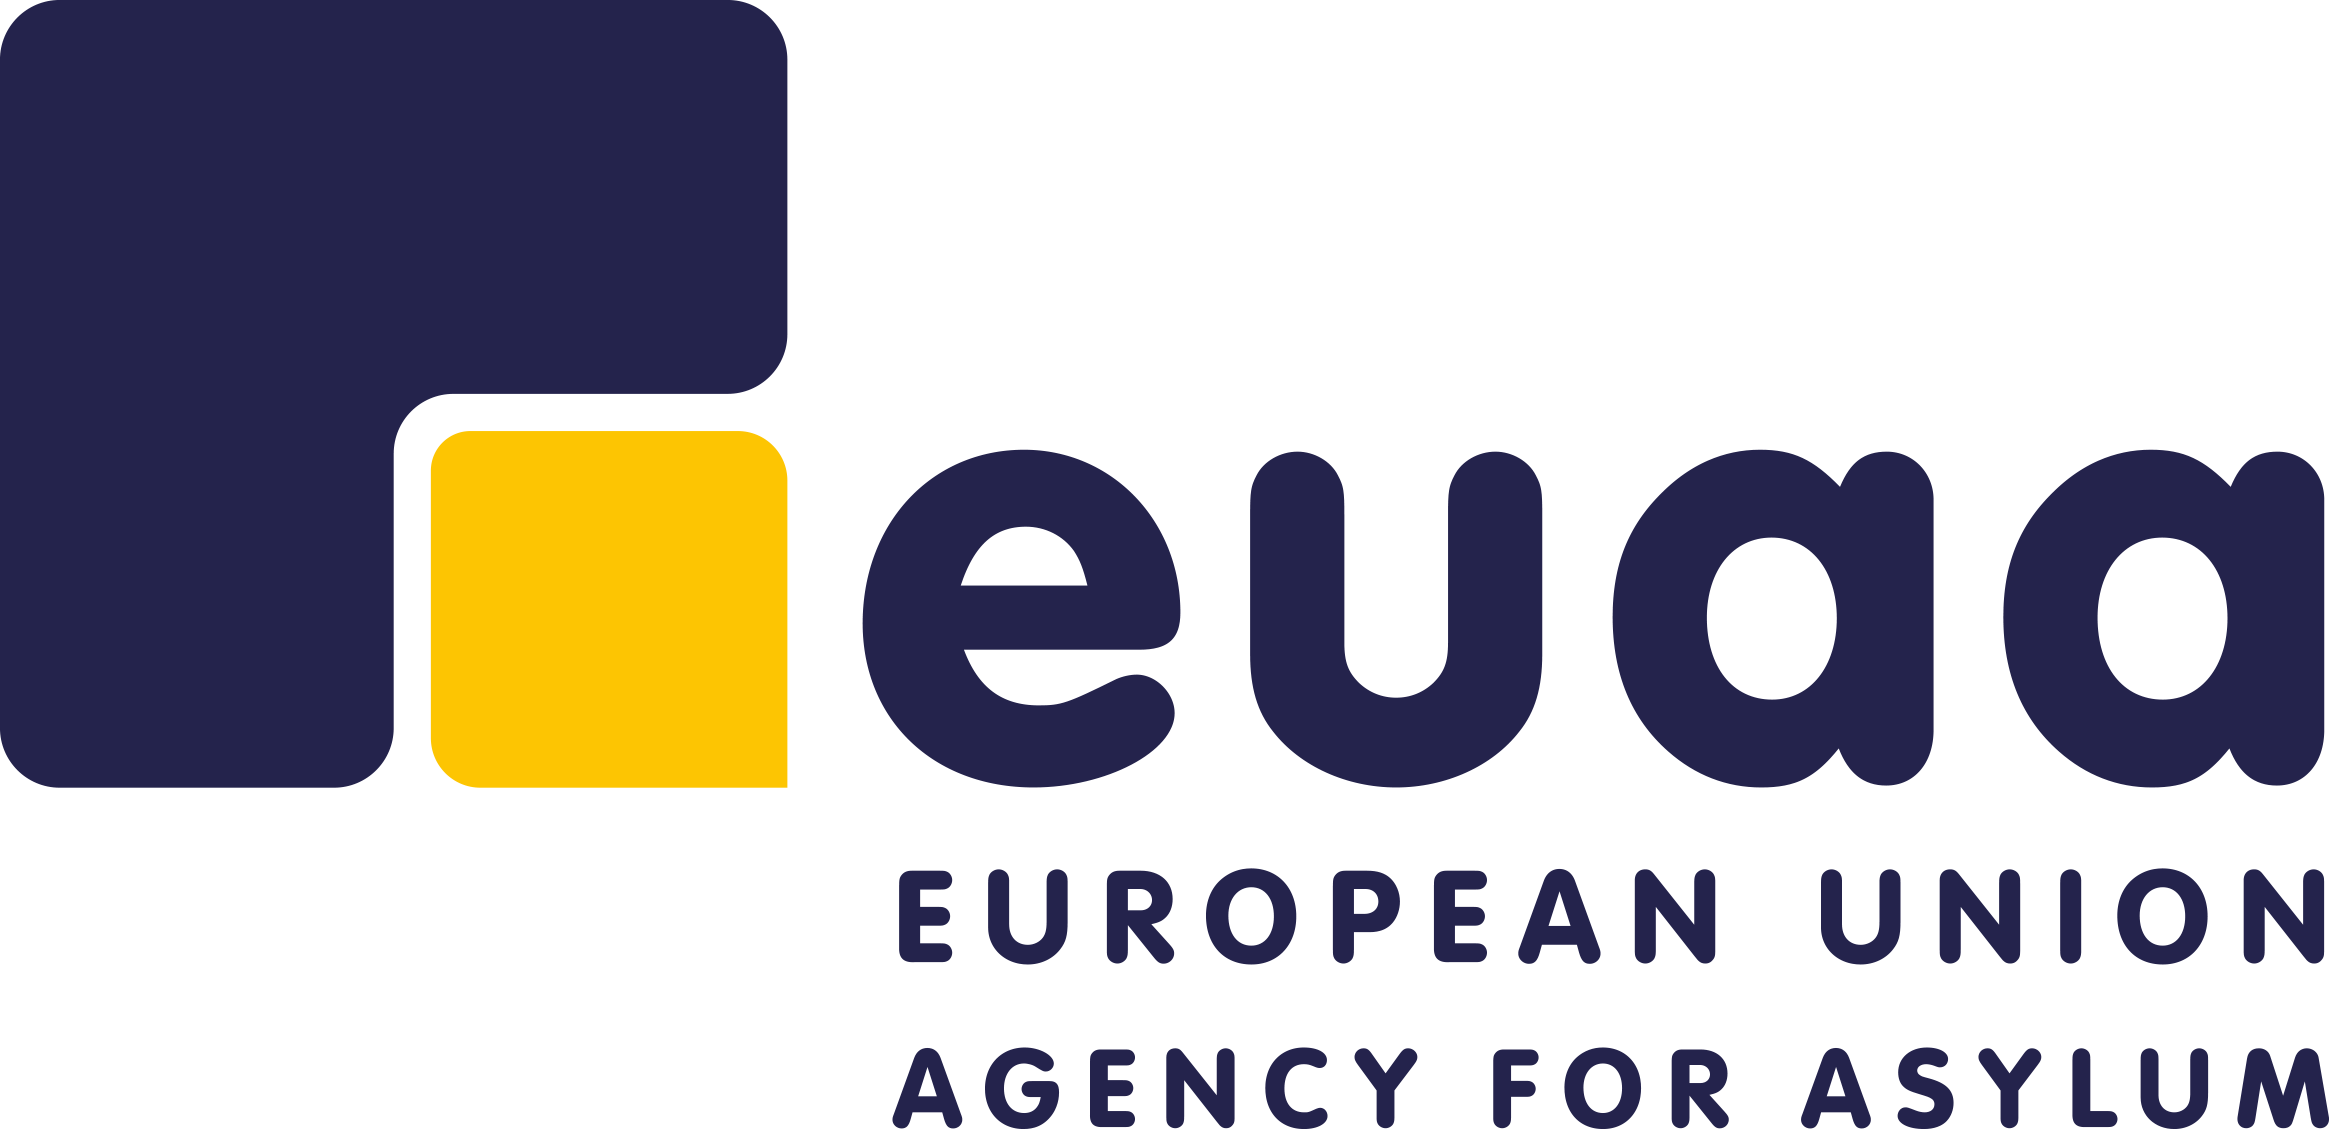 Den Europæiske Unions Asylagentur — logo i farver